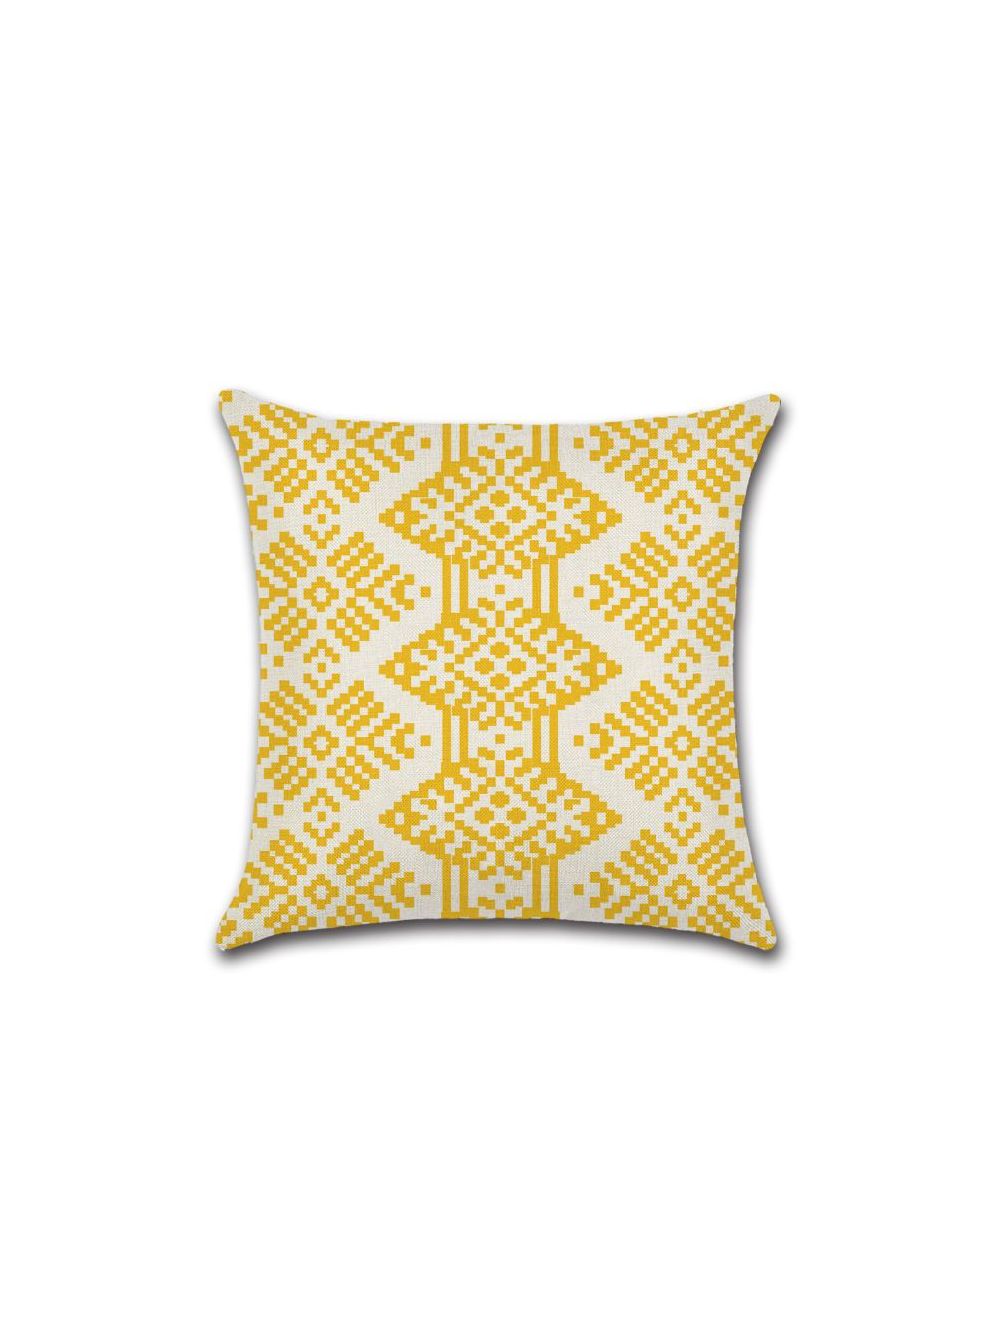 Rishahome Geometry Printed Cushion Cover 45x45 cm-9C31G0014